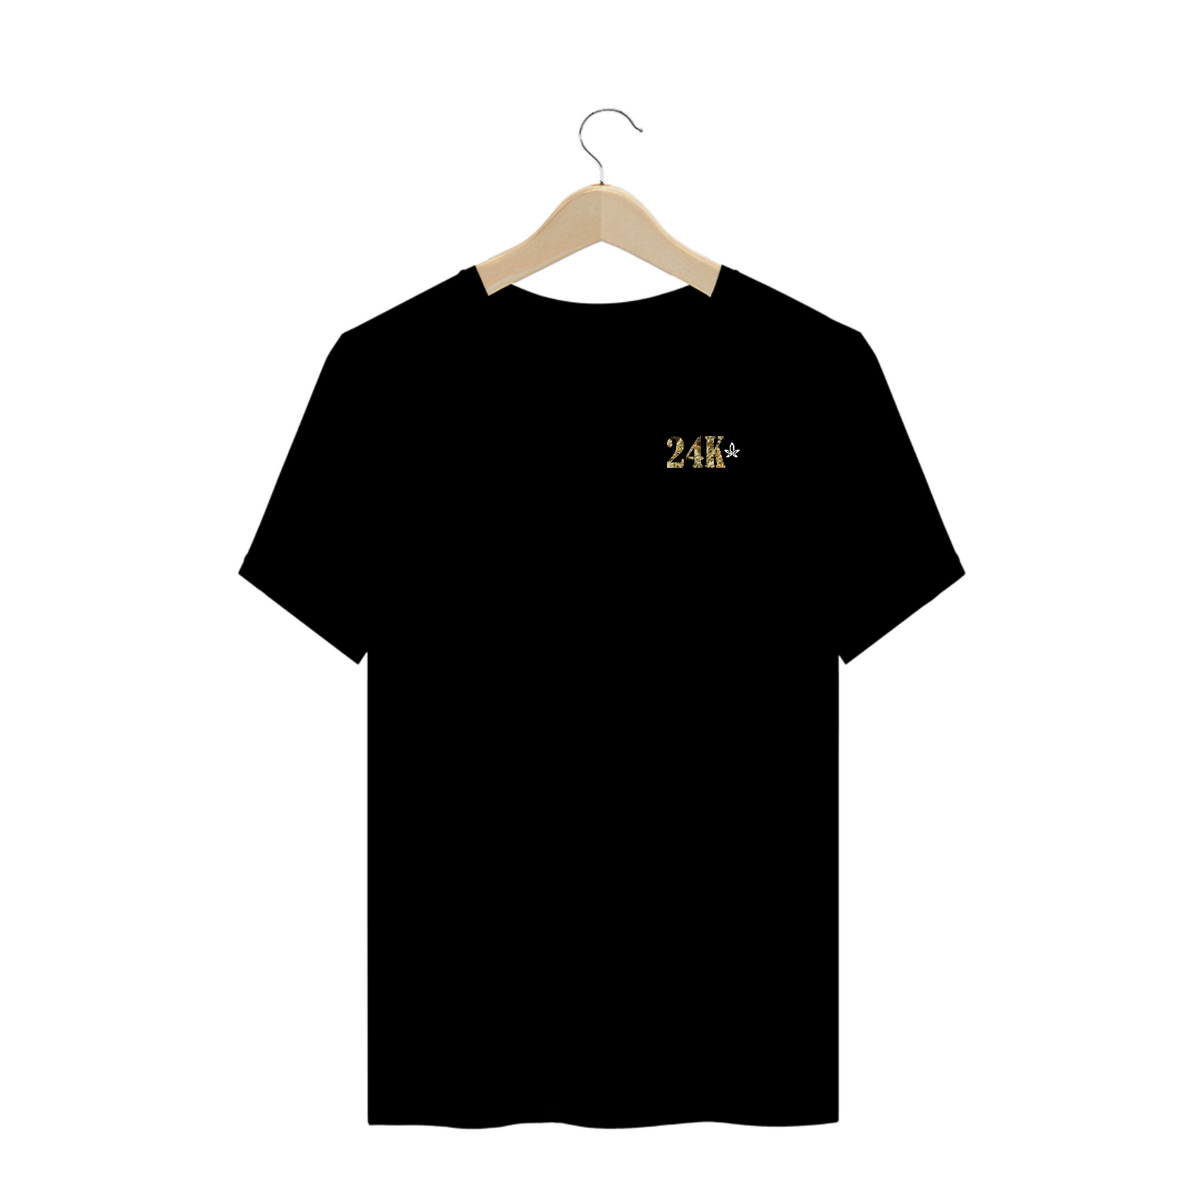 Nome do produto: Camiseta Plus Size 24K Logo Branco